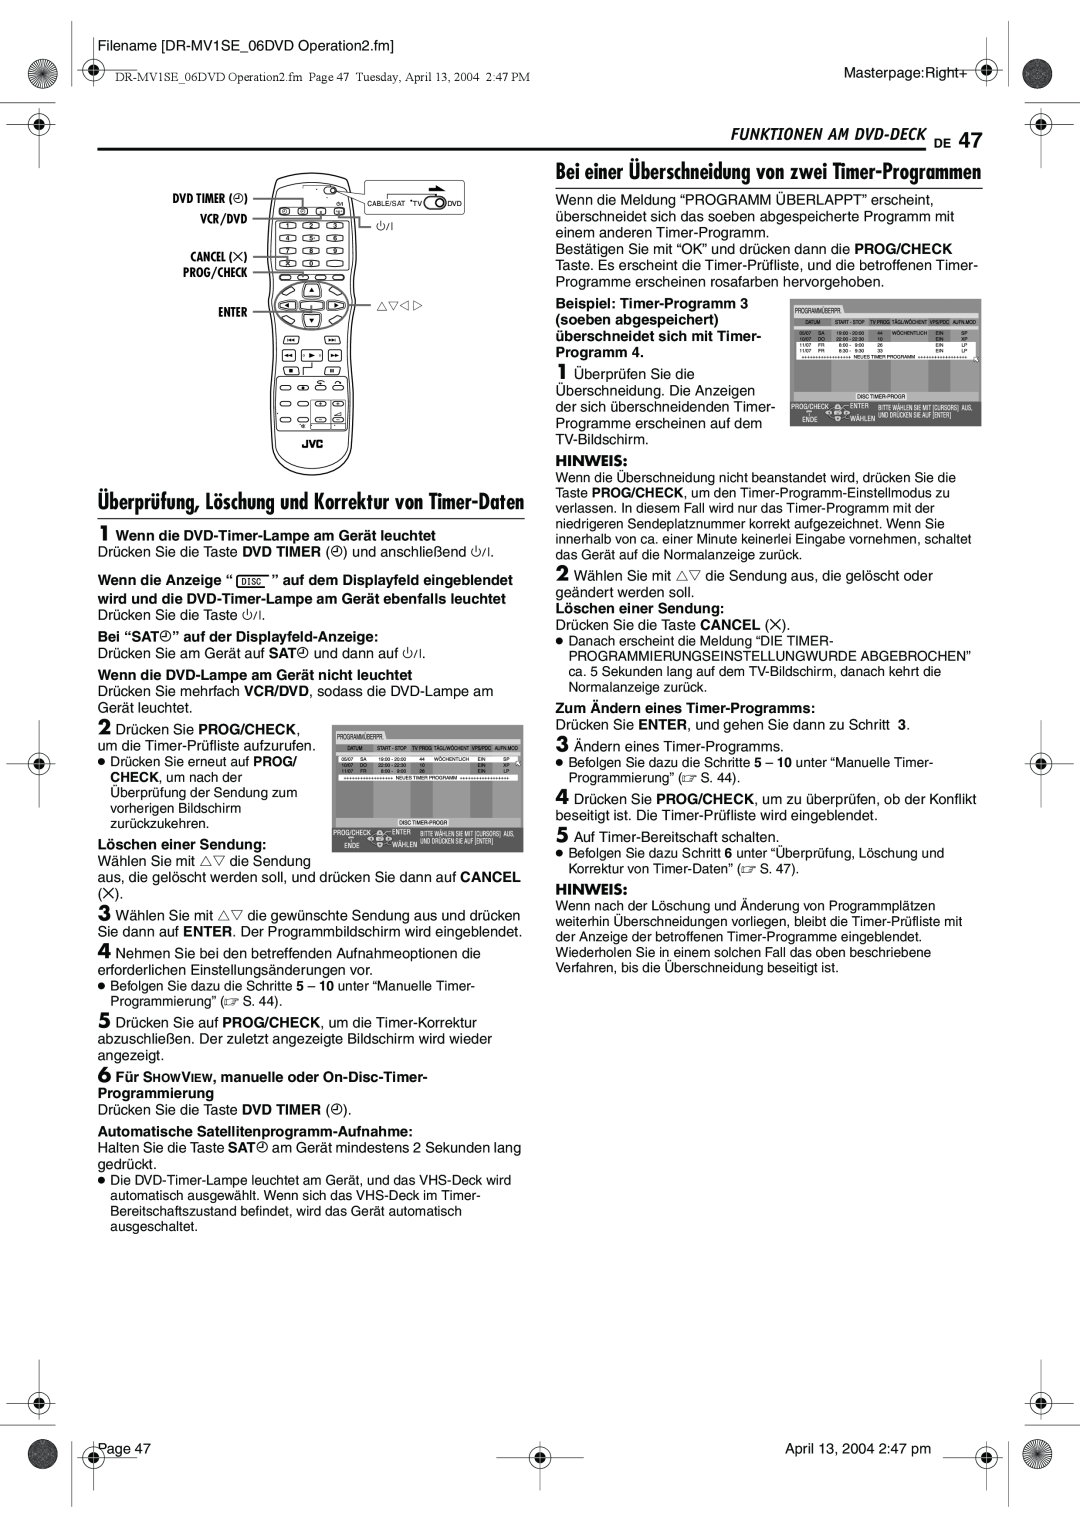 JVC DR-MV1S manual Bei einer Überschneidung von zwei Timer-Programmen, Bei “SAT#” auf der Displayfeld-Anzeige, Hinweis 